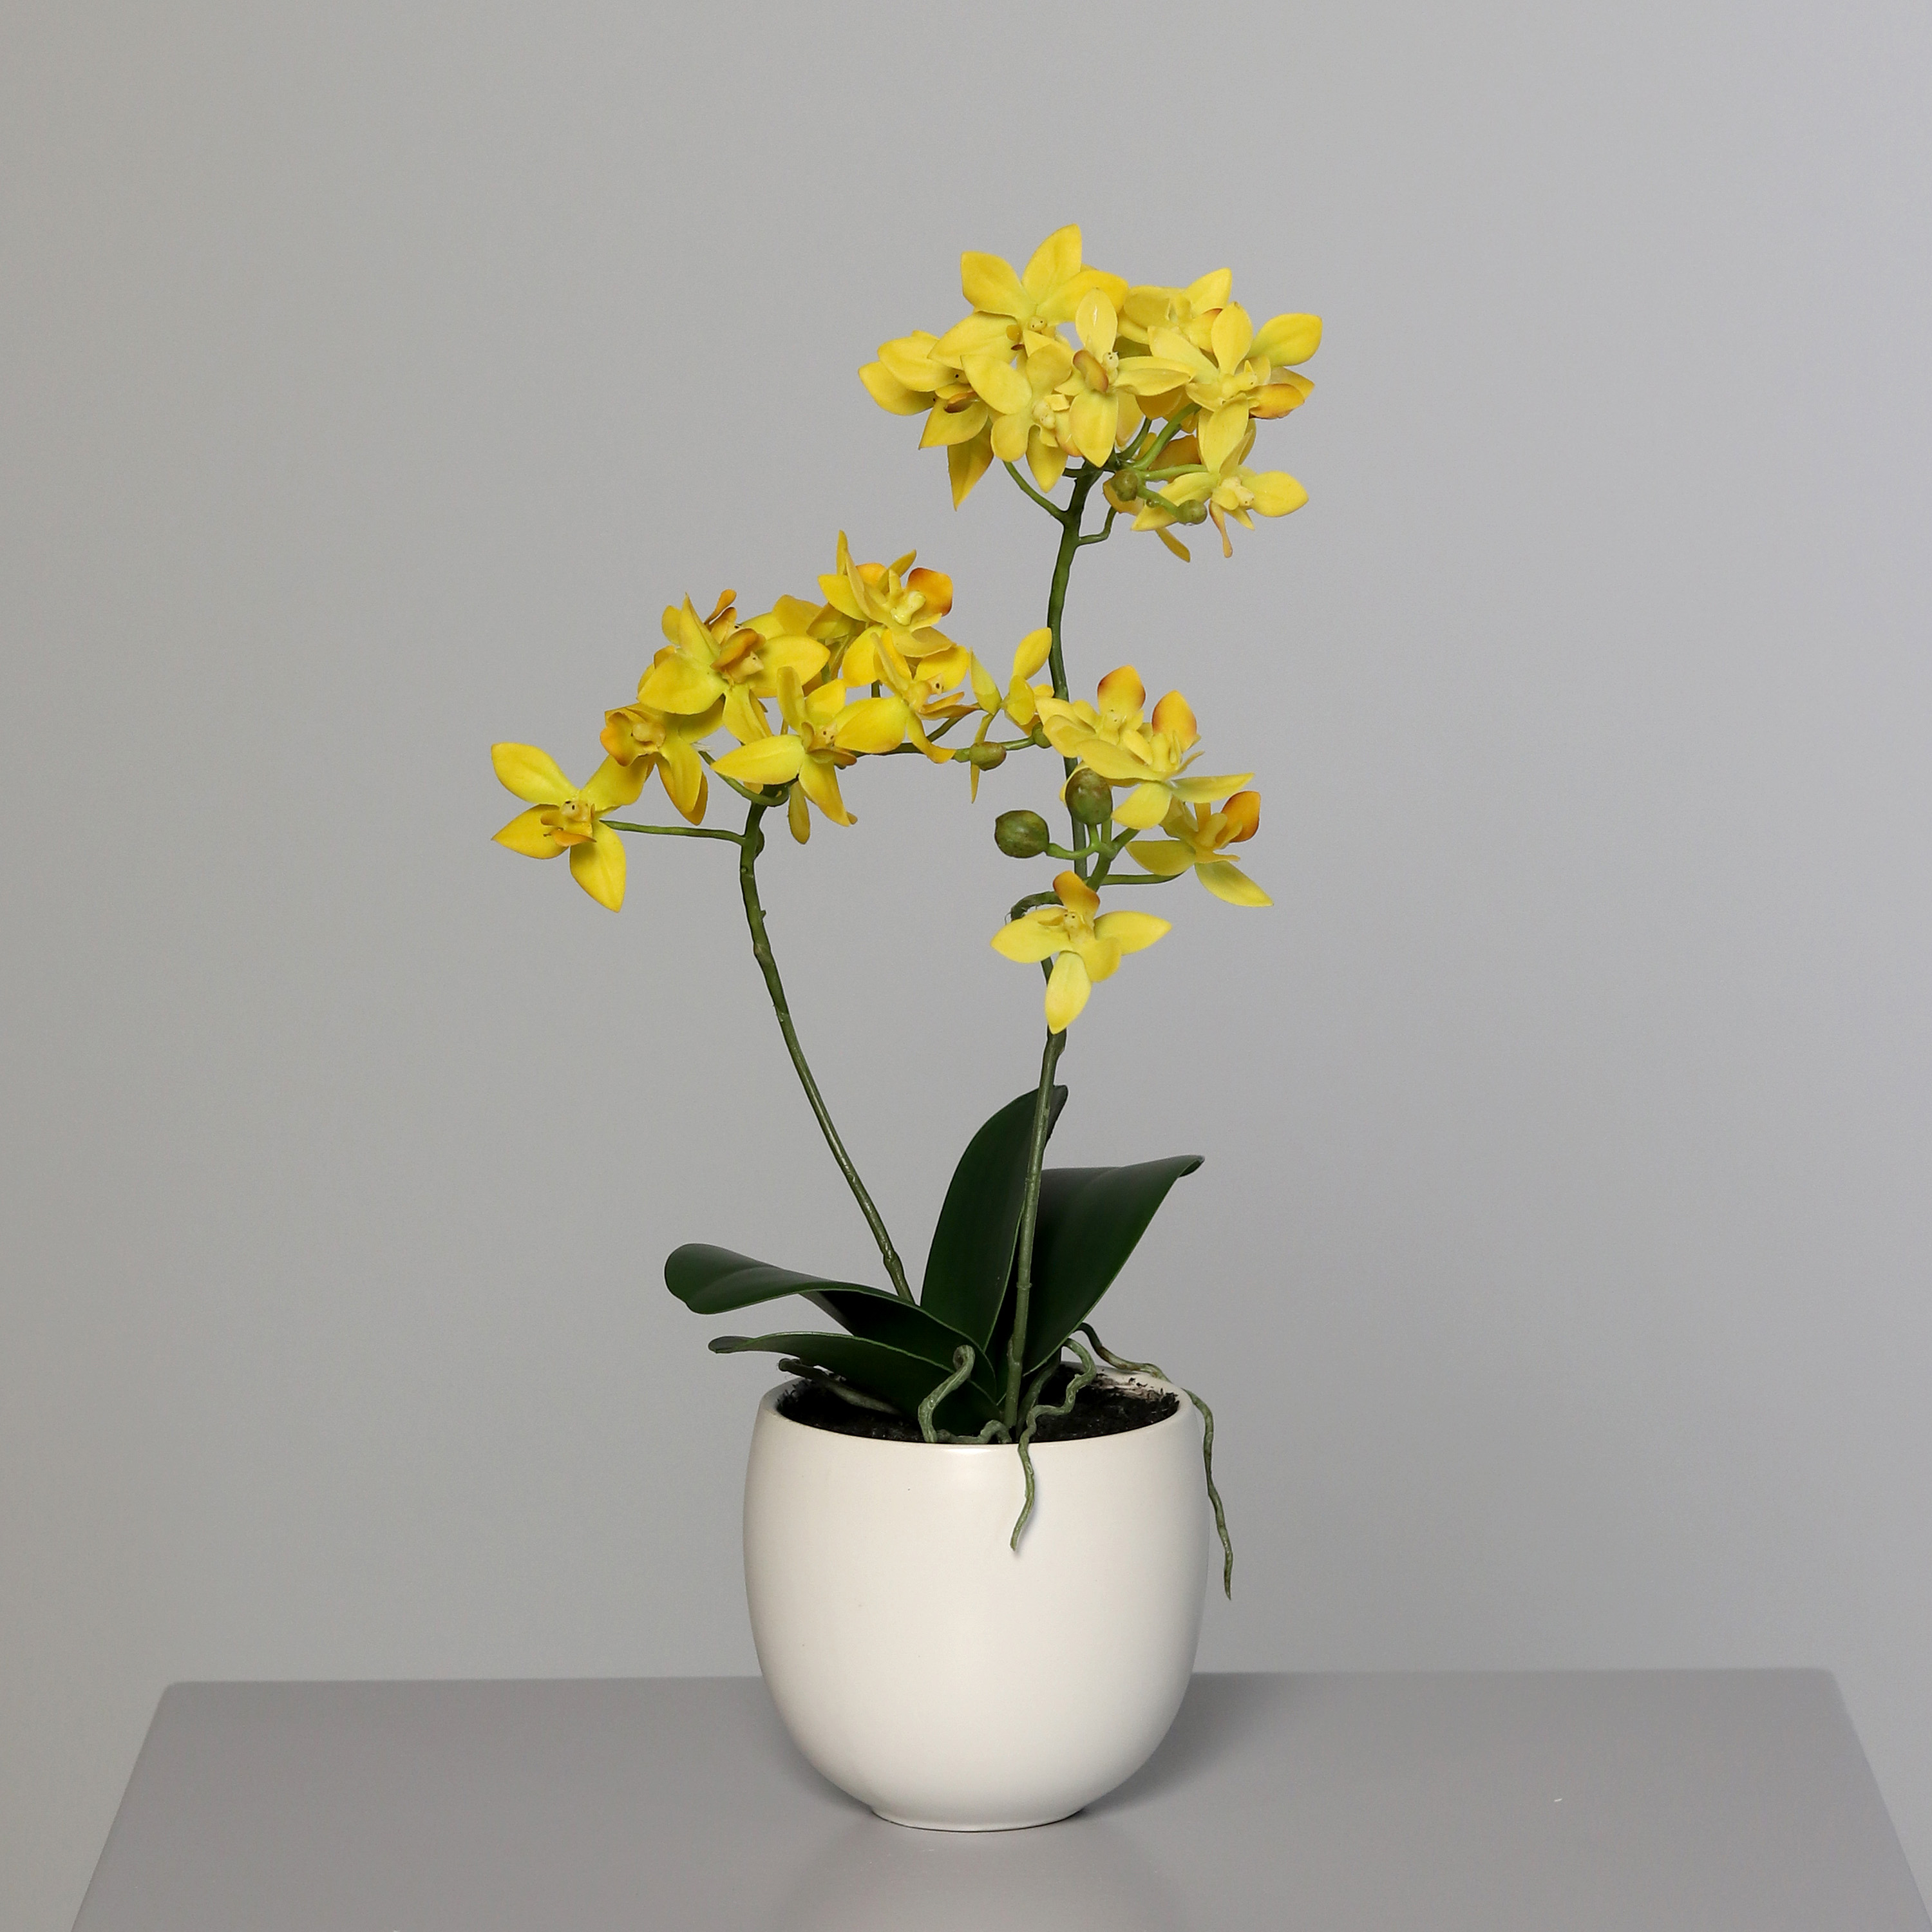 Orchidee mit 2 Rispen 38cm gelb im Keramiktopf DP künstliche Blumen Kunstpflanzen Kunstblumen